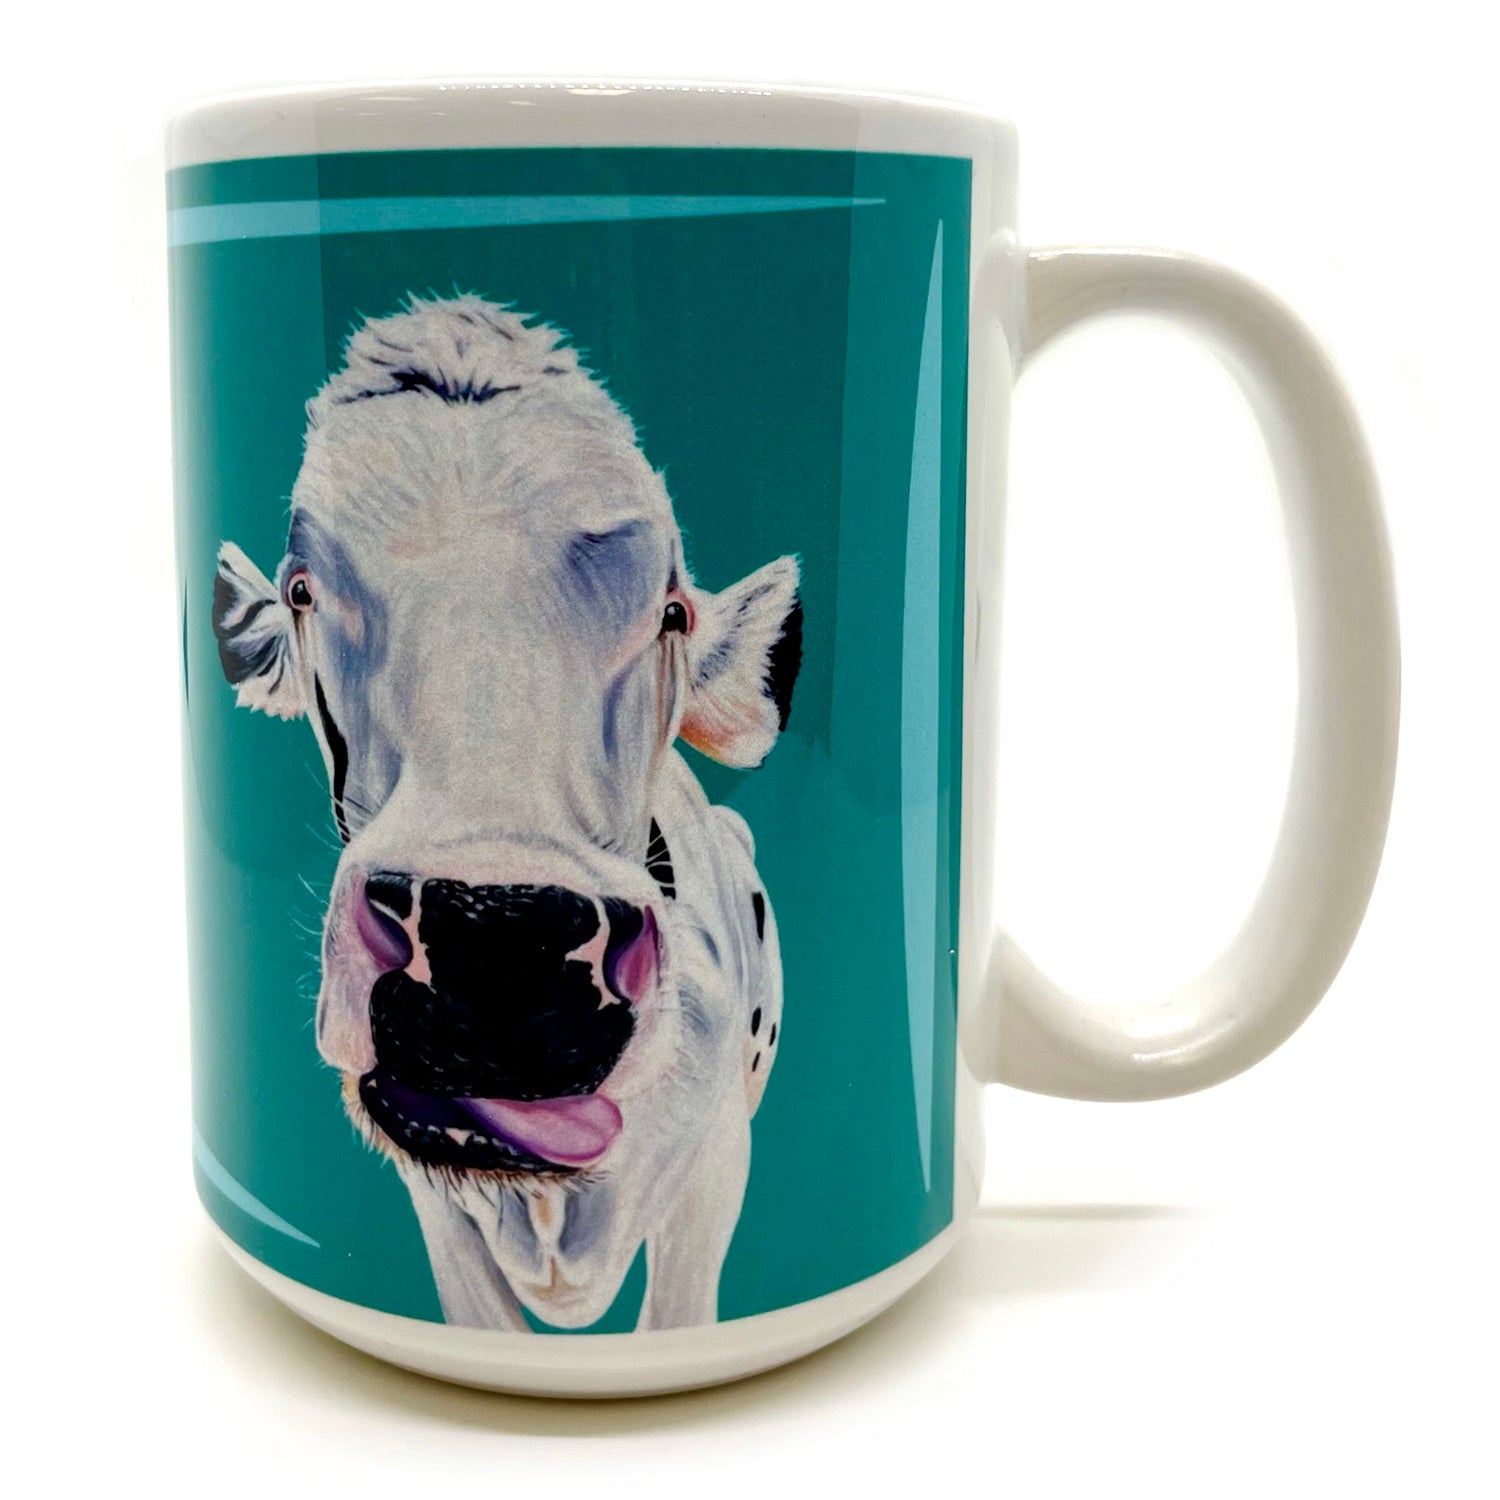 Cow mug - Buddha